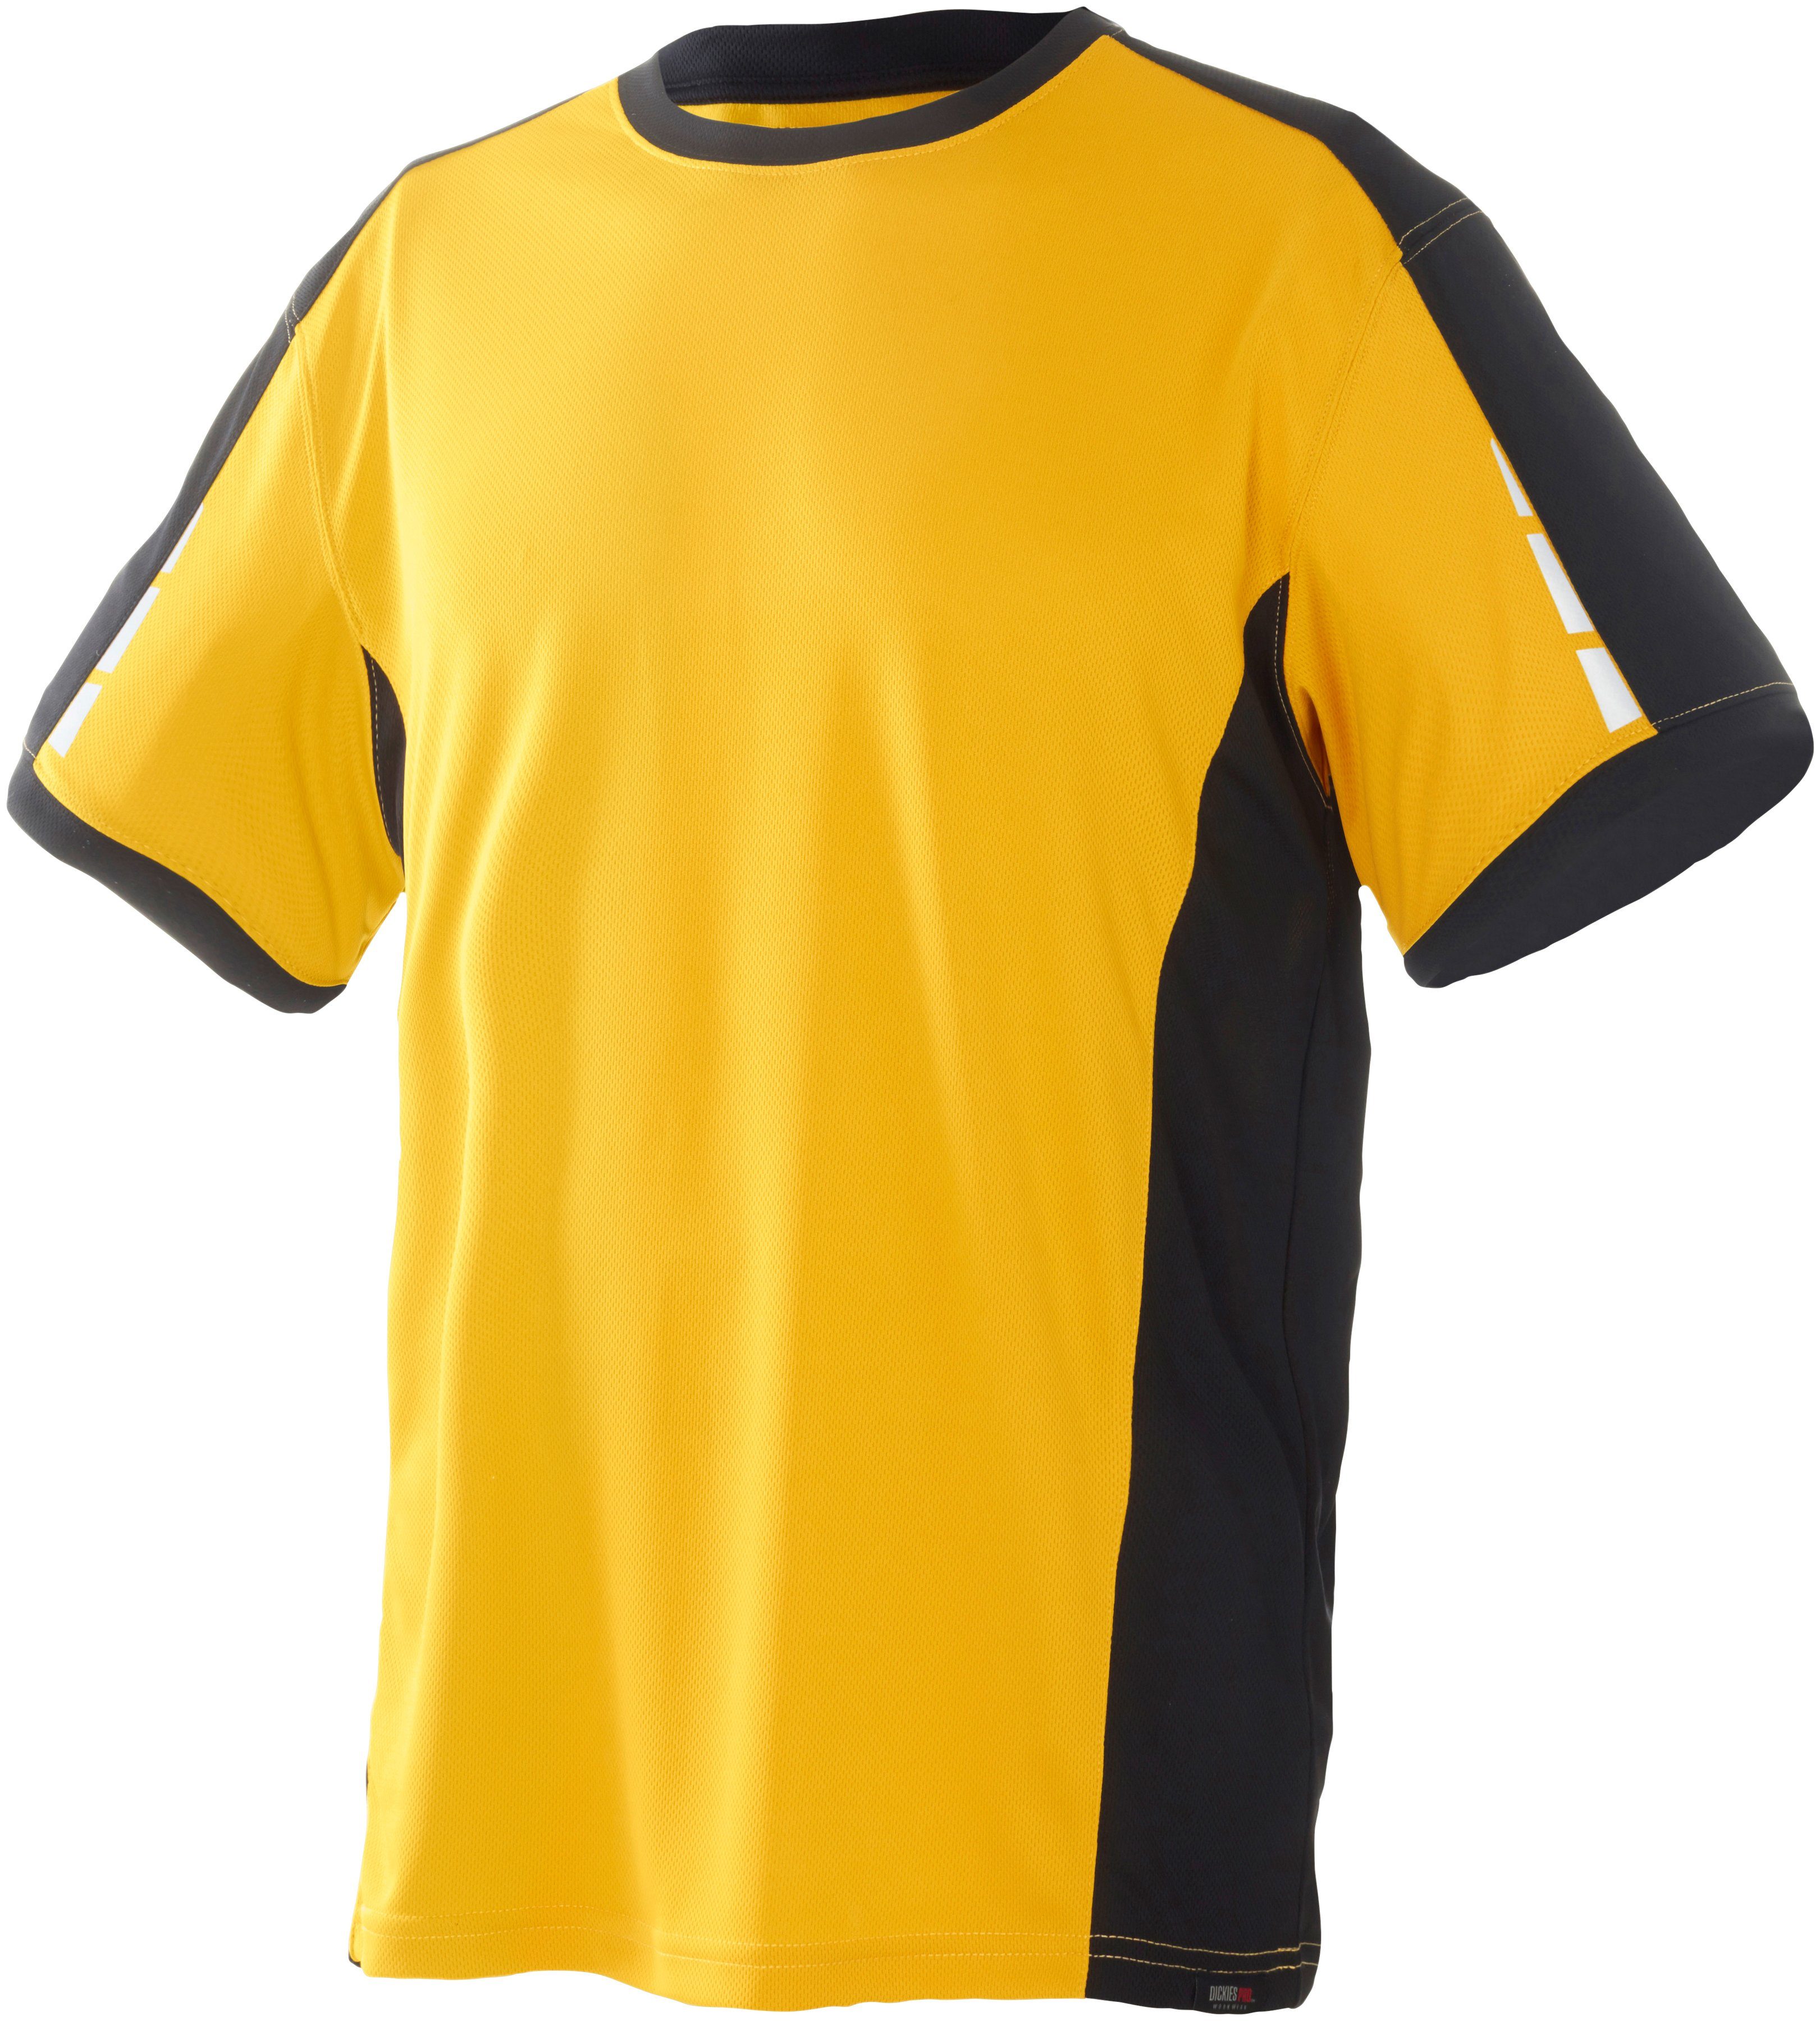 T-Shirt Ärmeln den an gelb-schwarz Pro reflektierenden Details Dickies mit